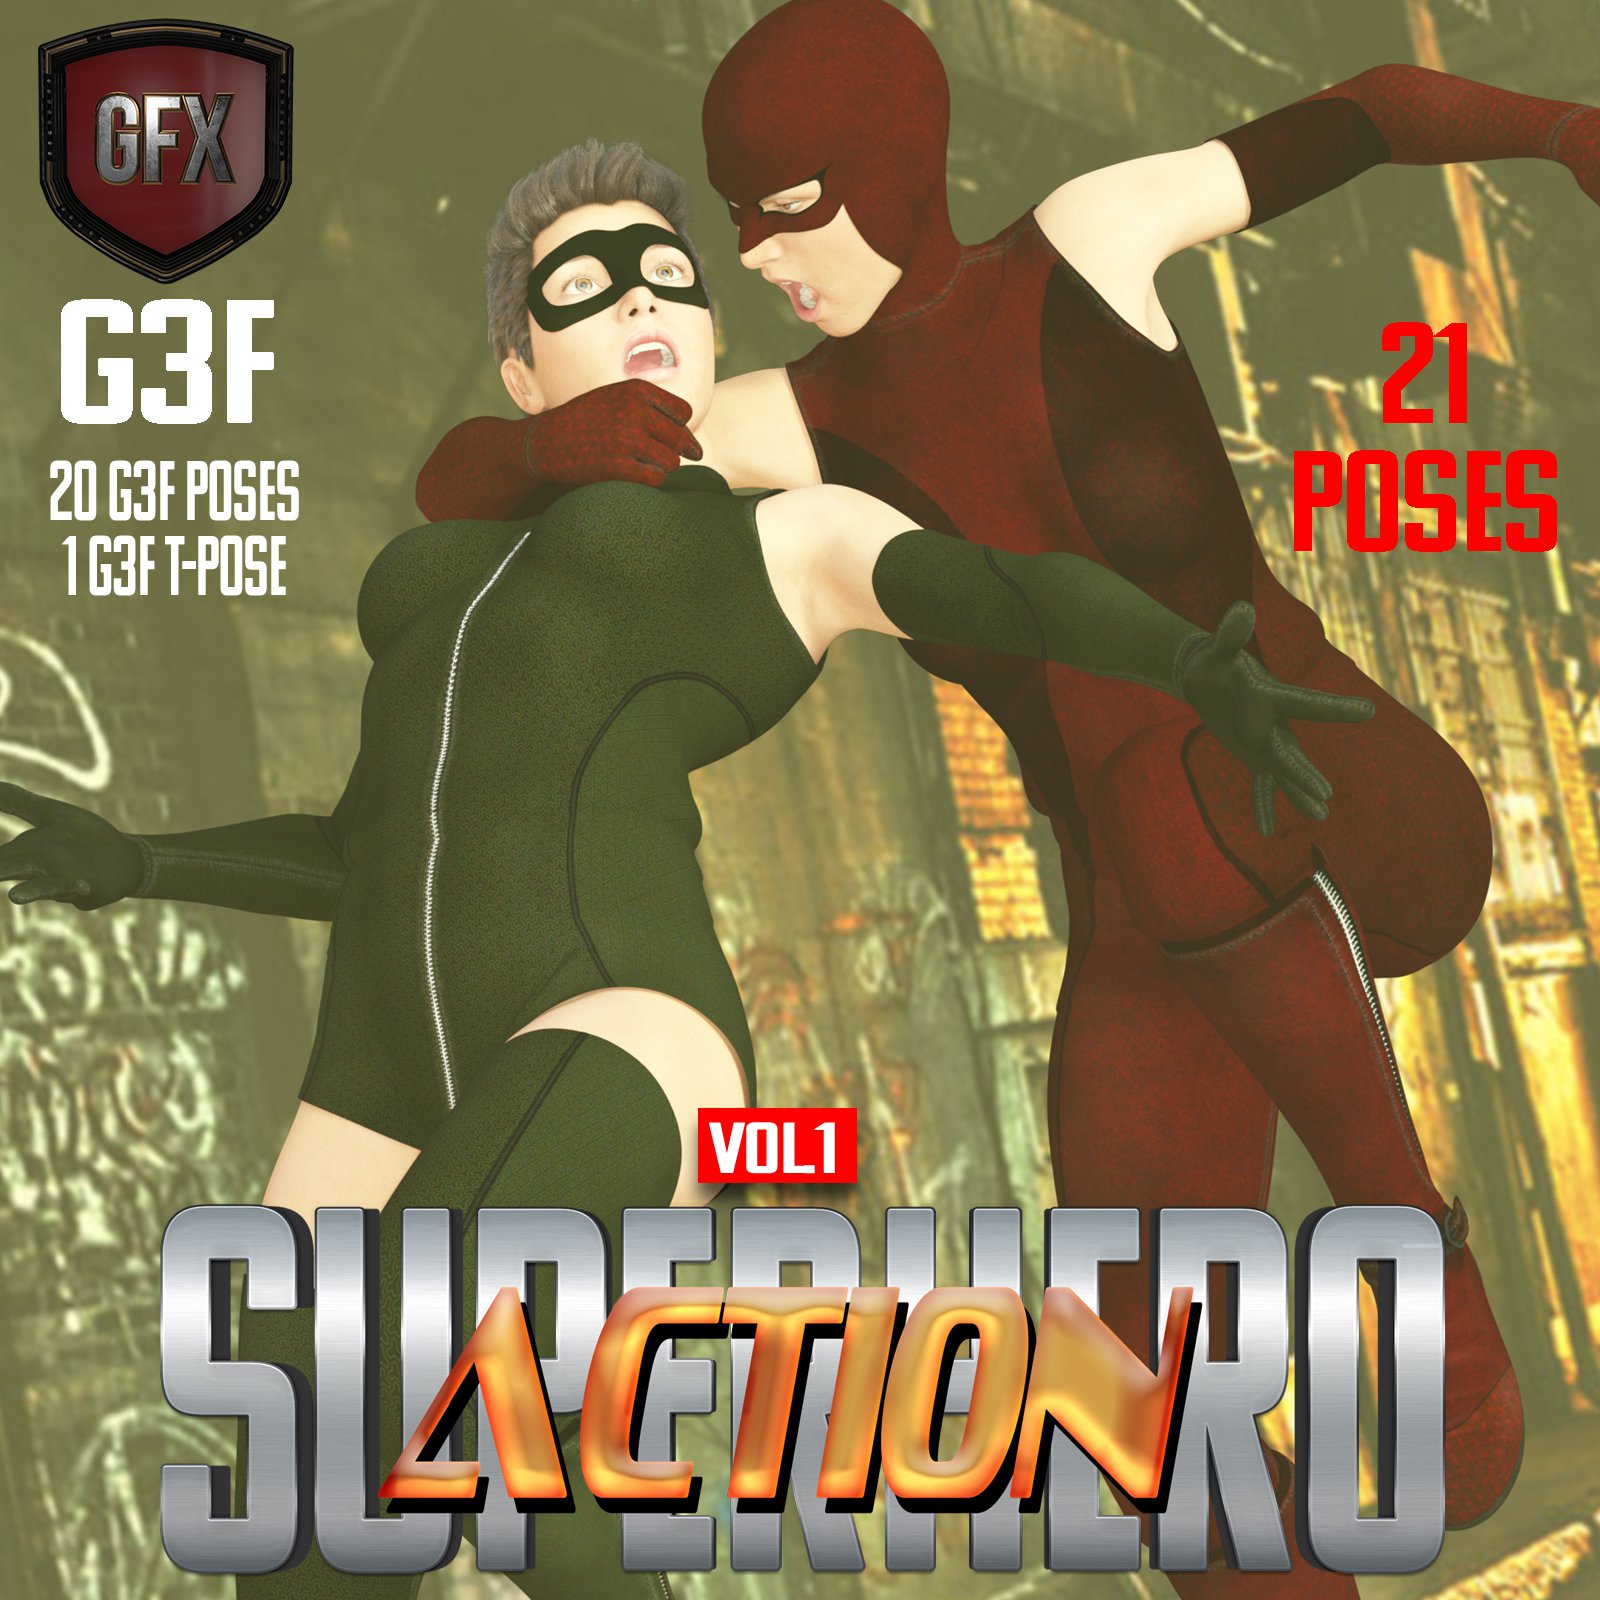 SuperHero Action for G3F Volume 1_DAZ3D下载站